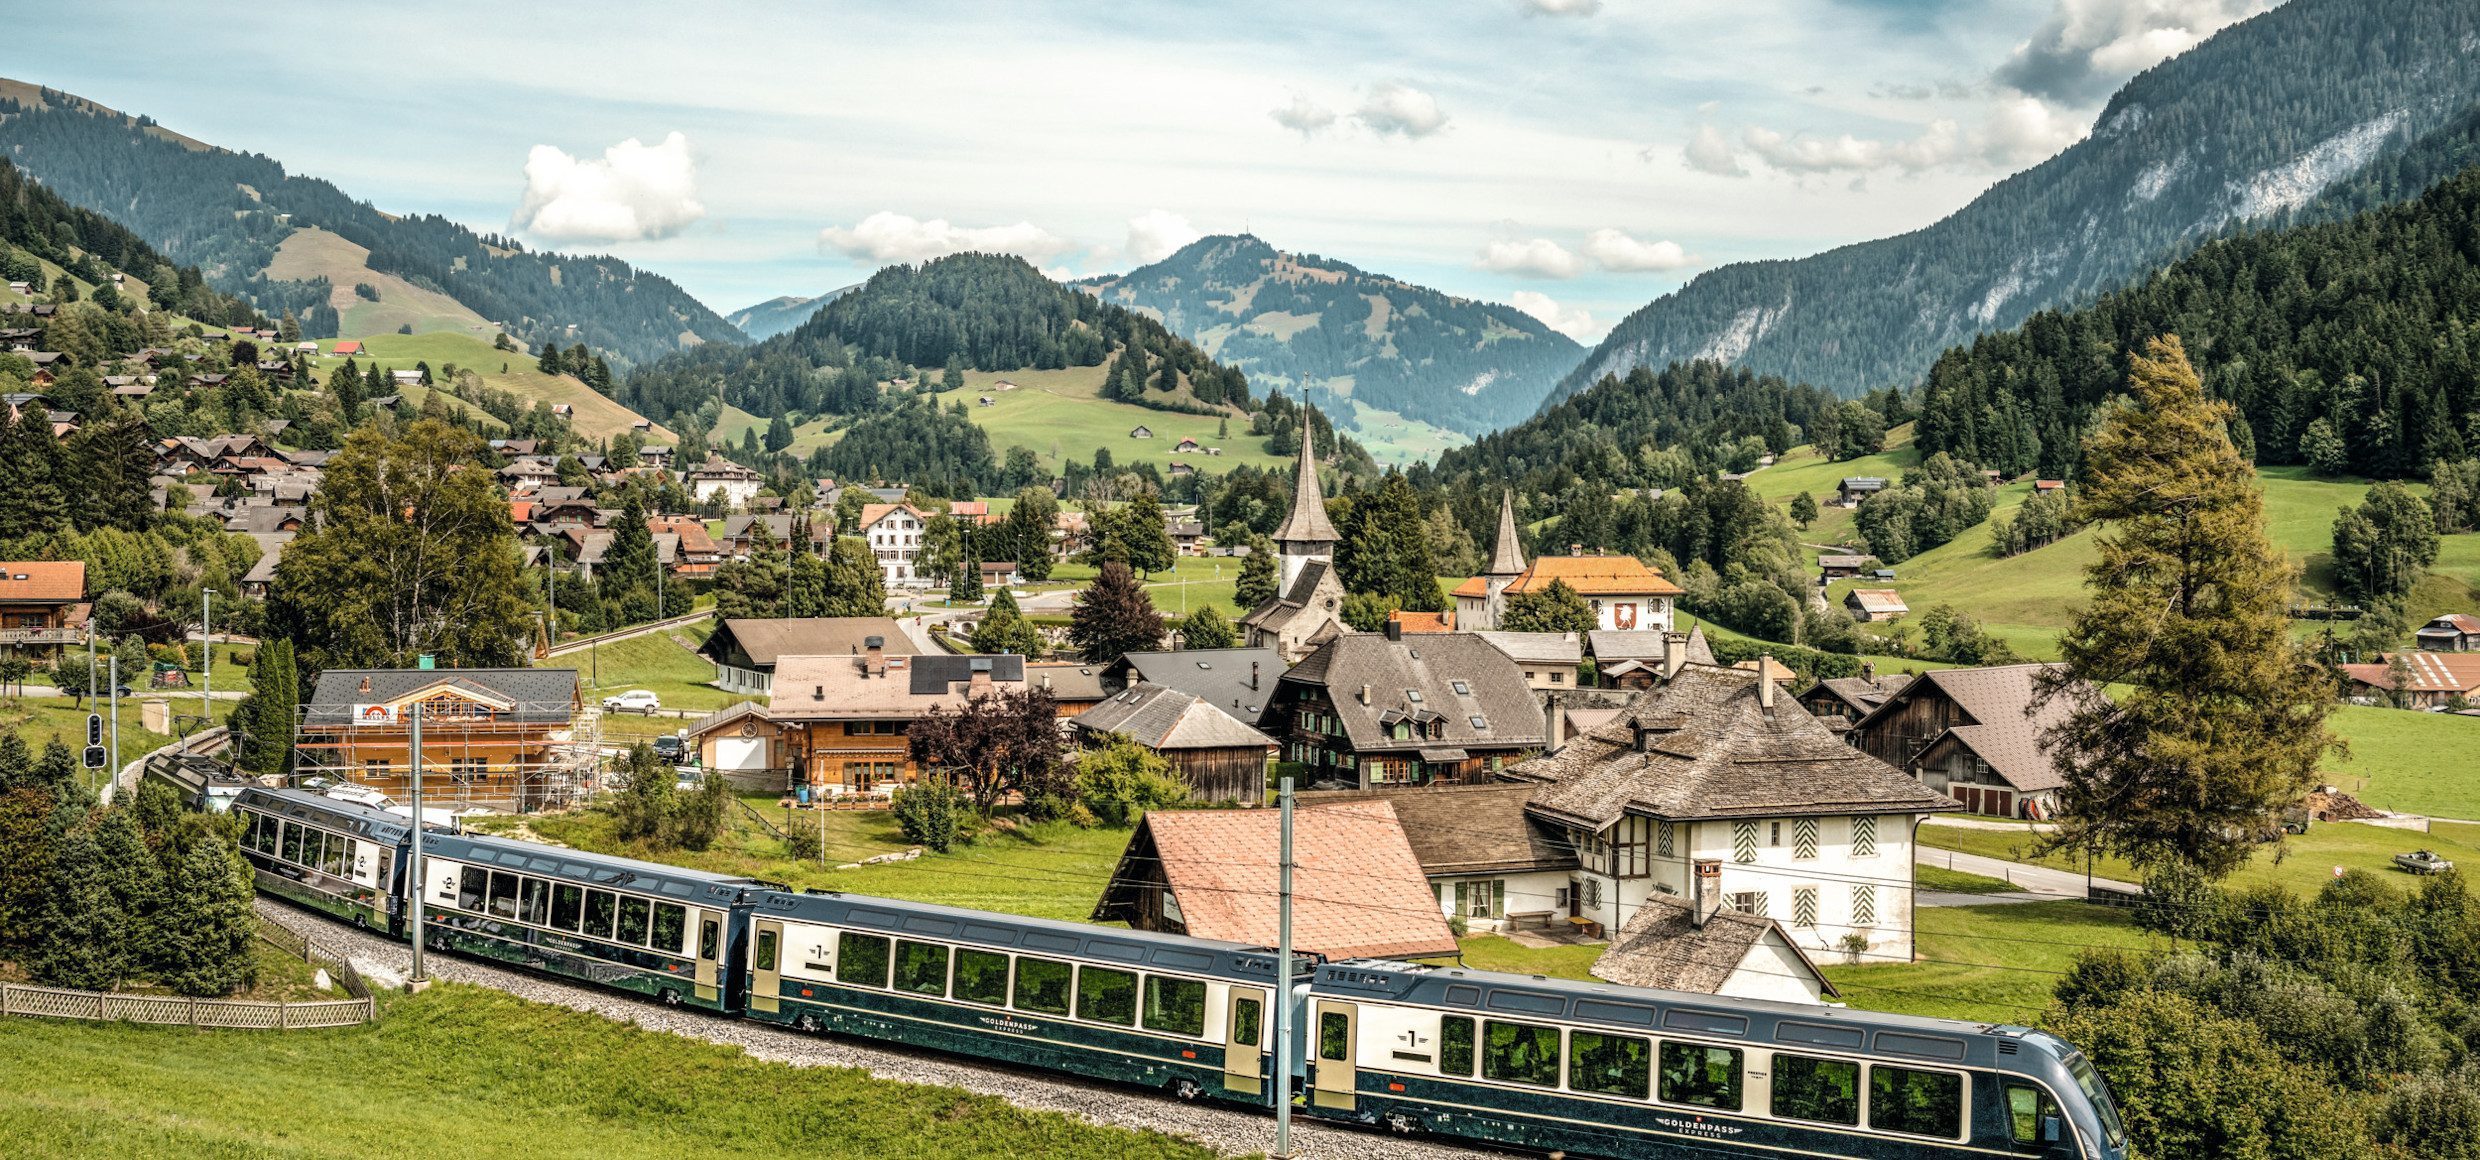 Schweiz Grand Train Tour_GoldenPass-Express_03